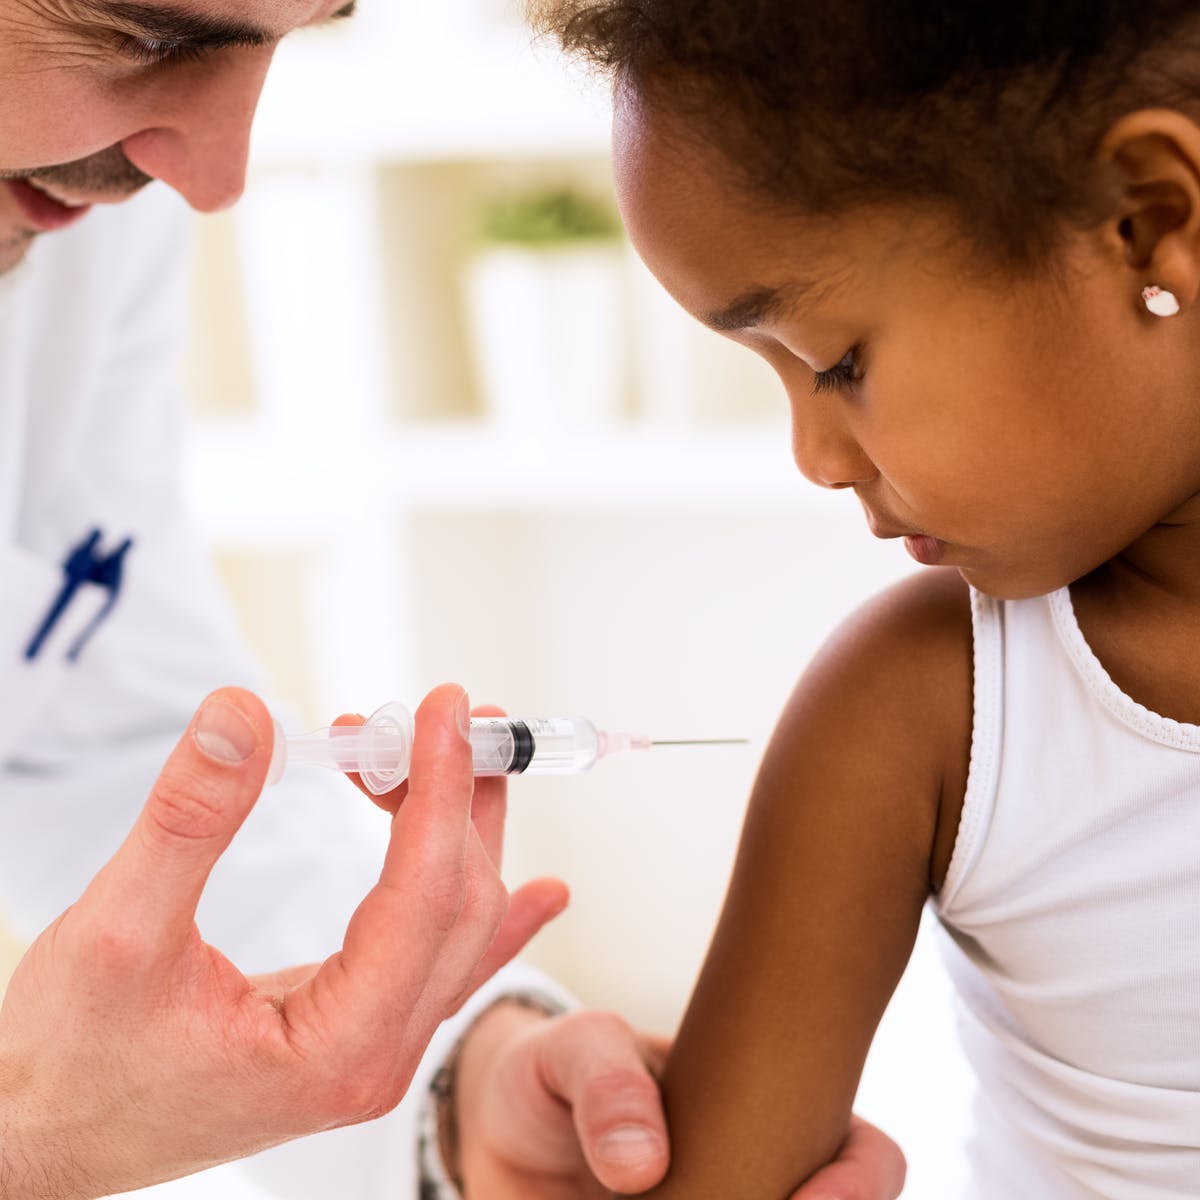 نظر سازمان جهانی بهداشت درباره واکسیناسیون کودکان در برابر کرونا